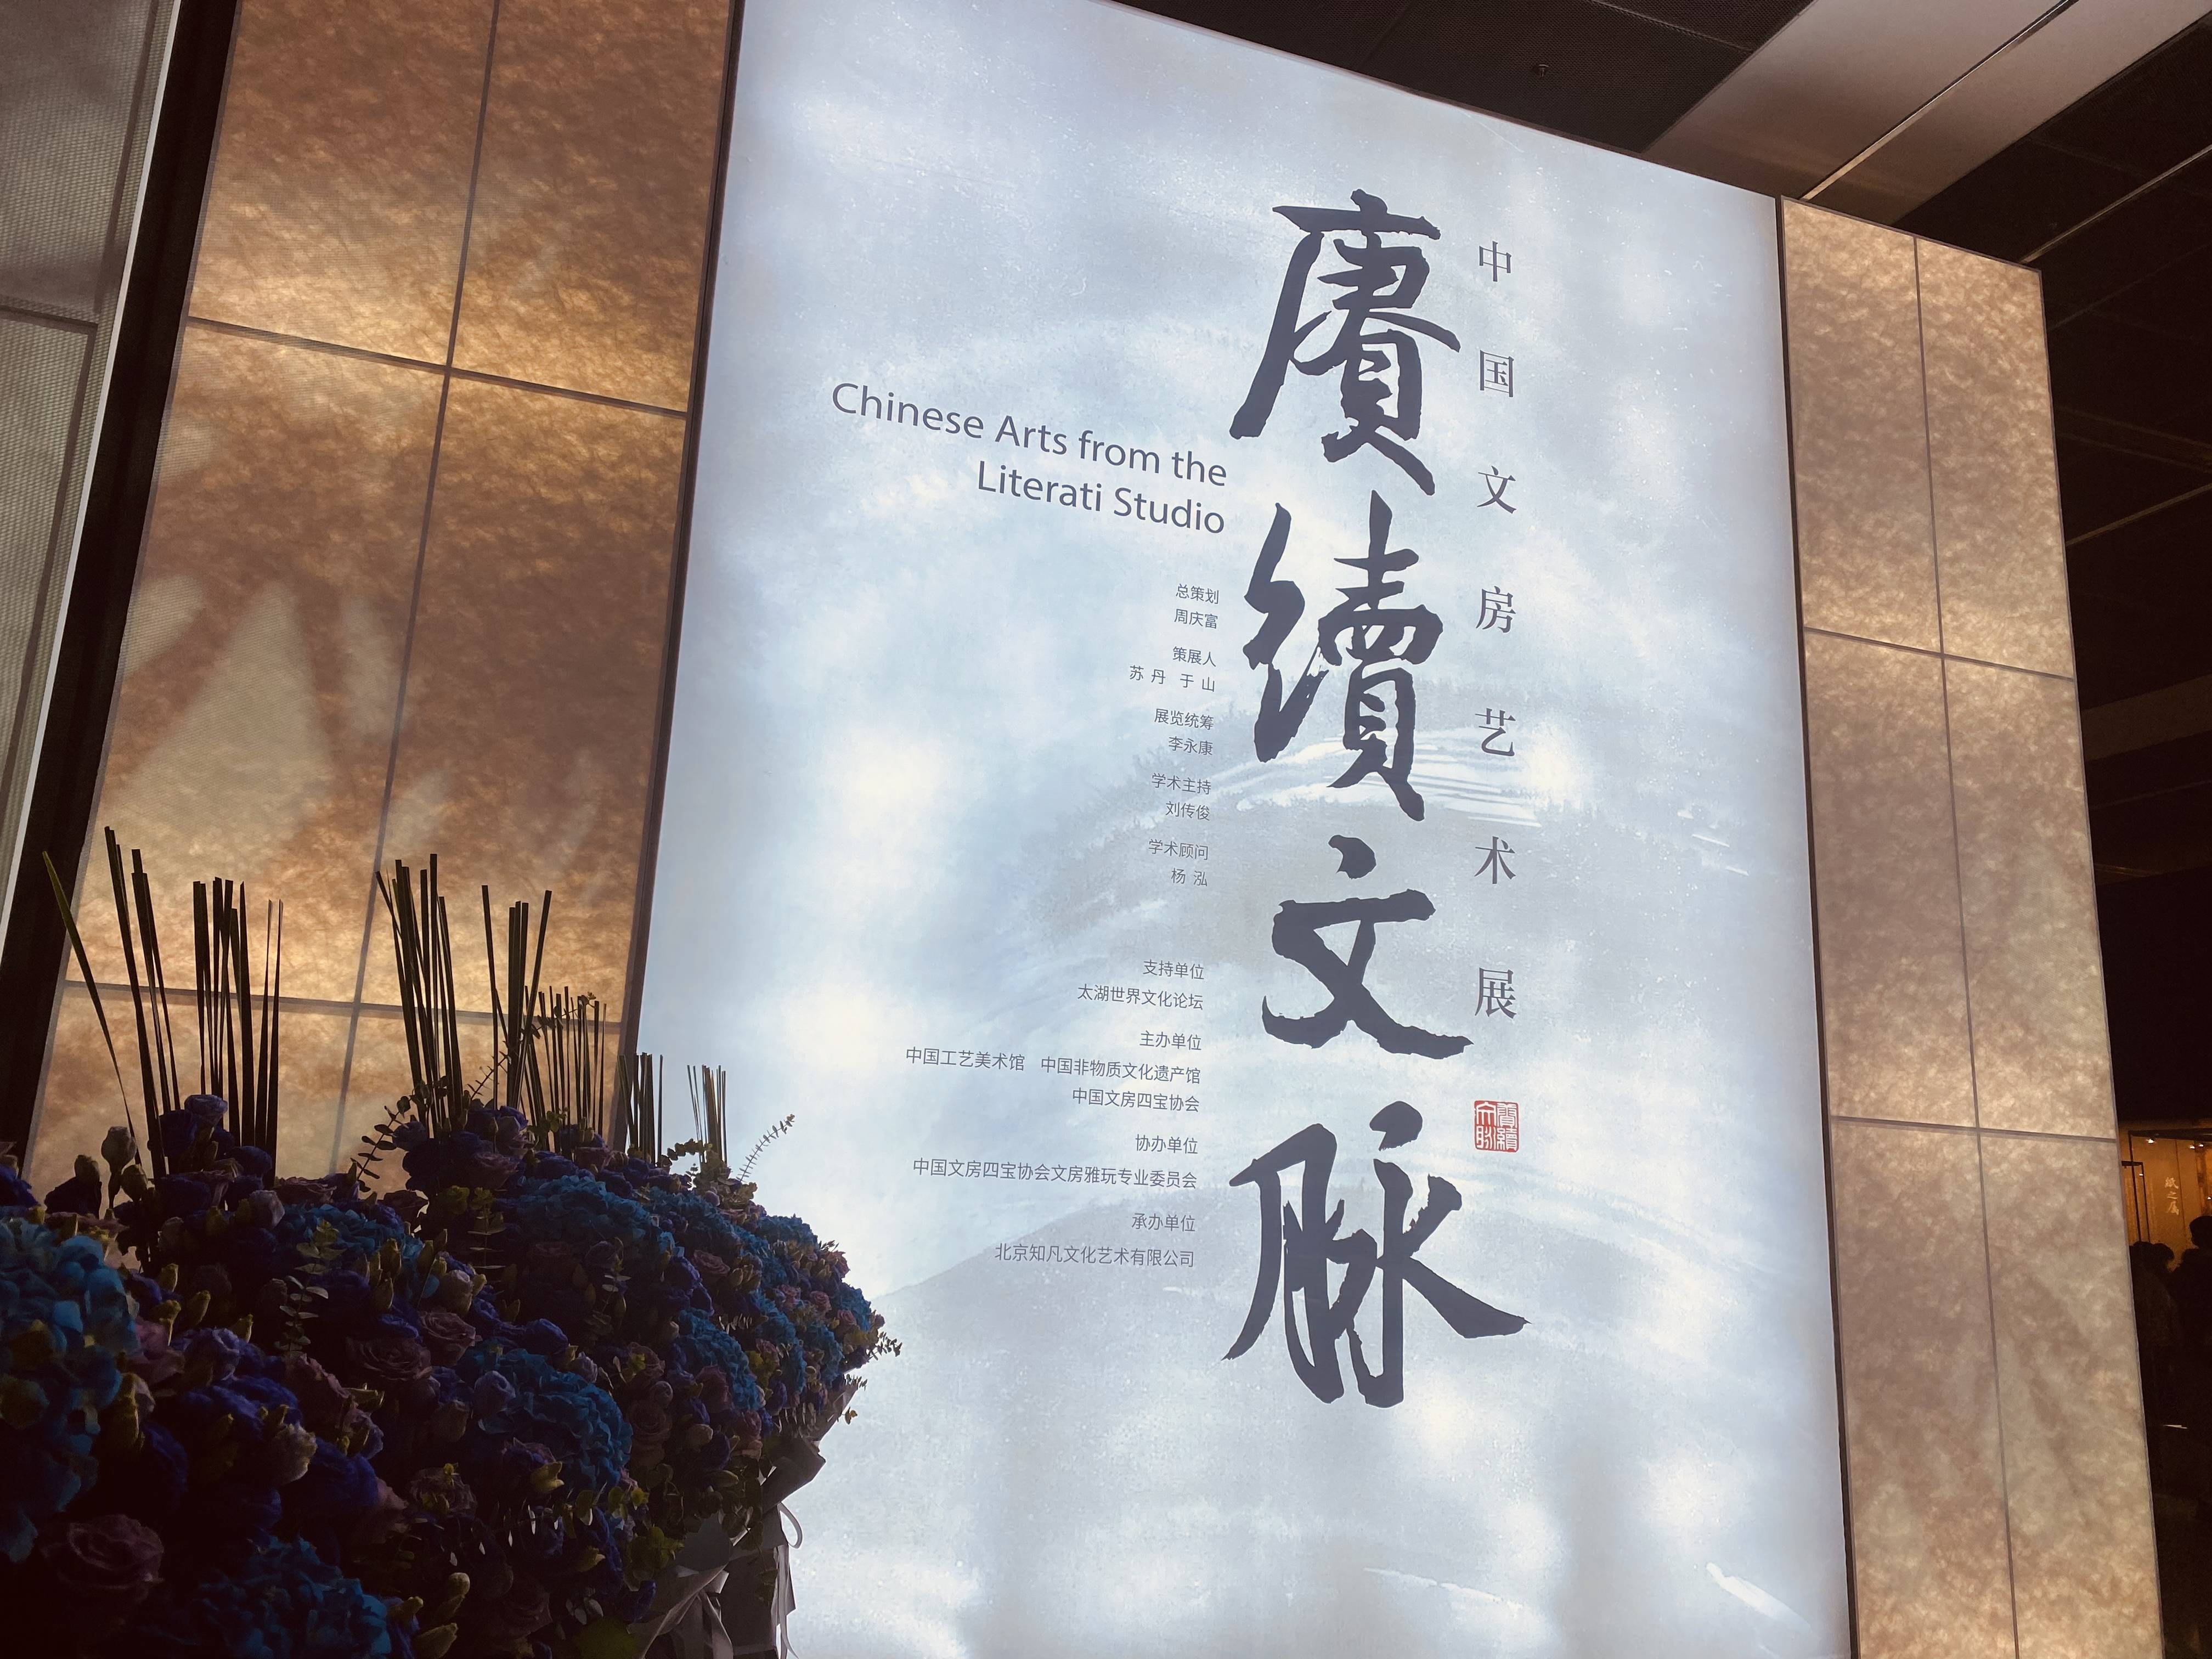 赓续文脉——中国文房艺术展”在京开幕，展出600余件文房器物_展览_当代_